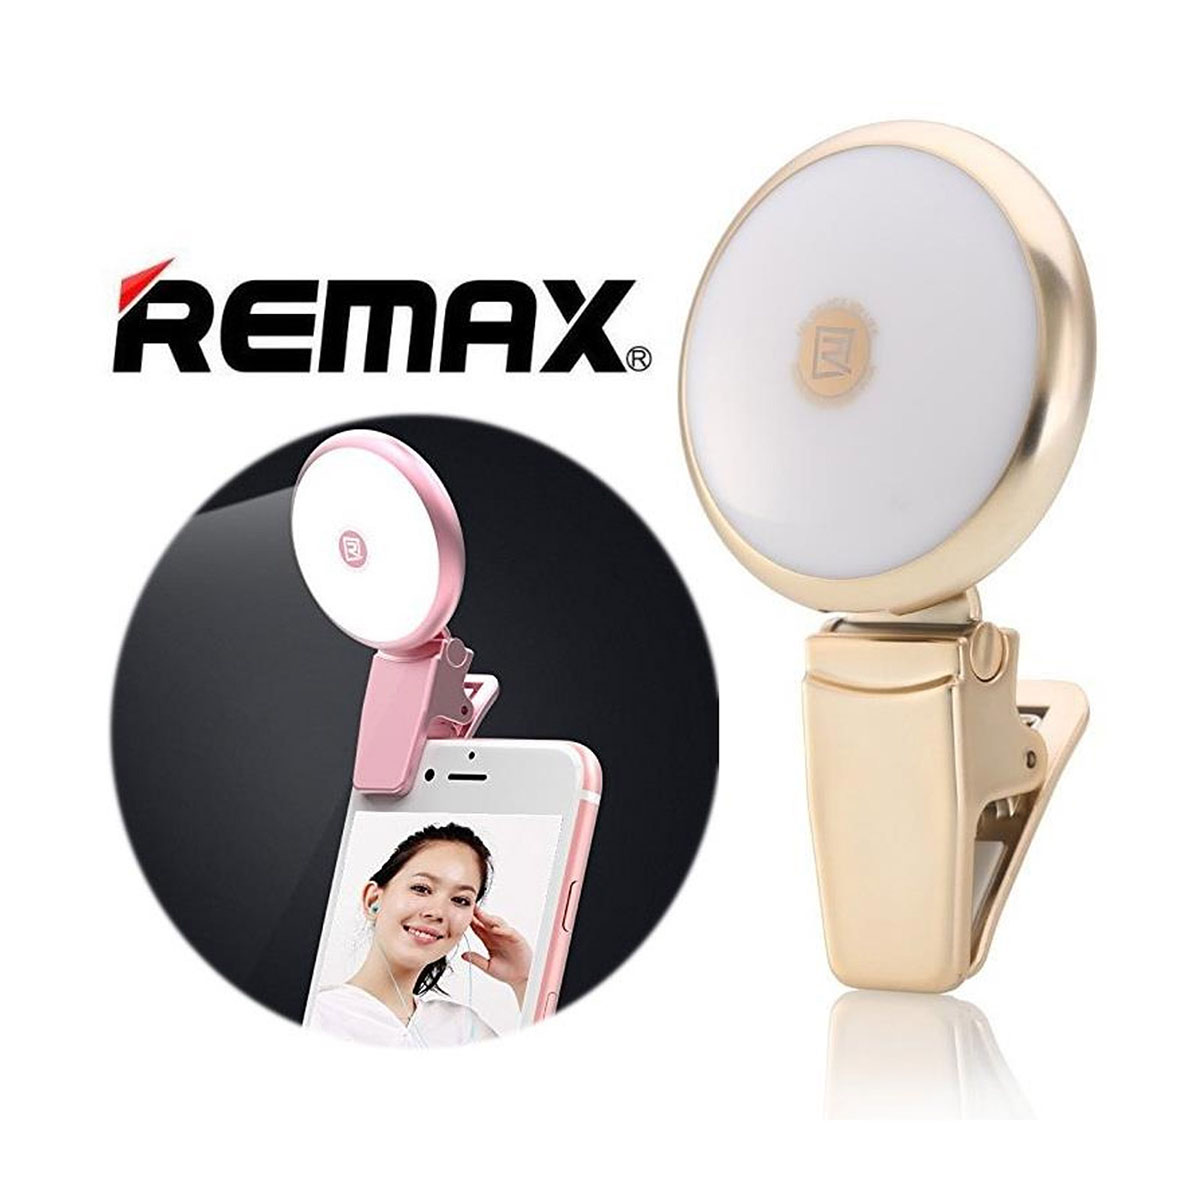 Селфи-фонарь "Remax" Selfie SpotLight 9 режимов (золотой).